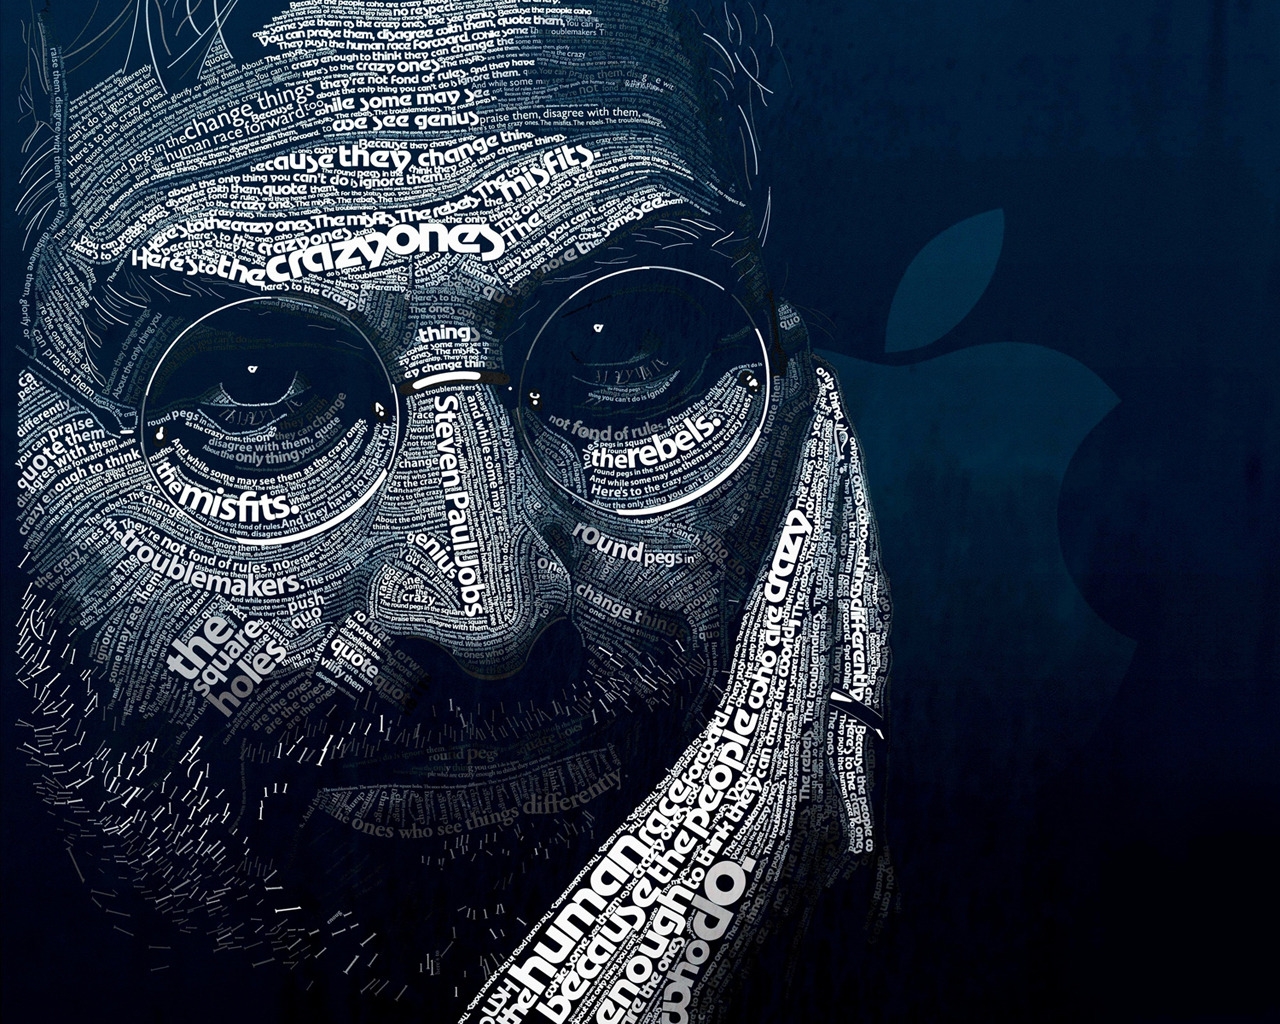 Steve Jobs Word Art for 1280 x 1024 resolution